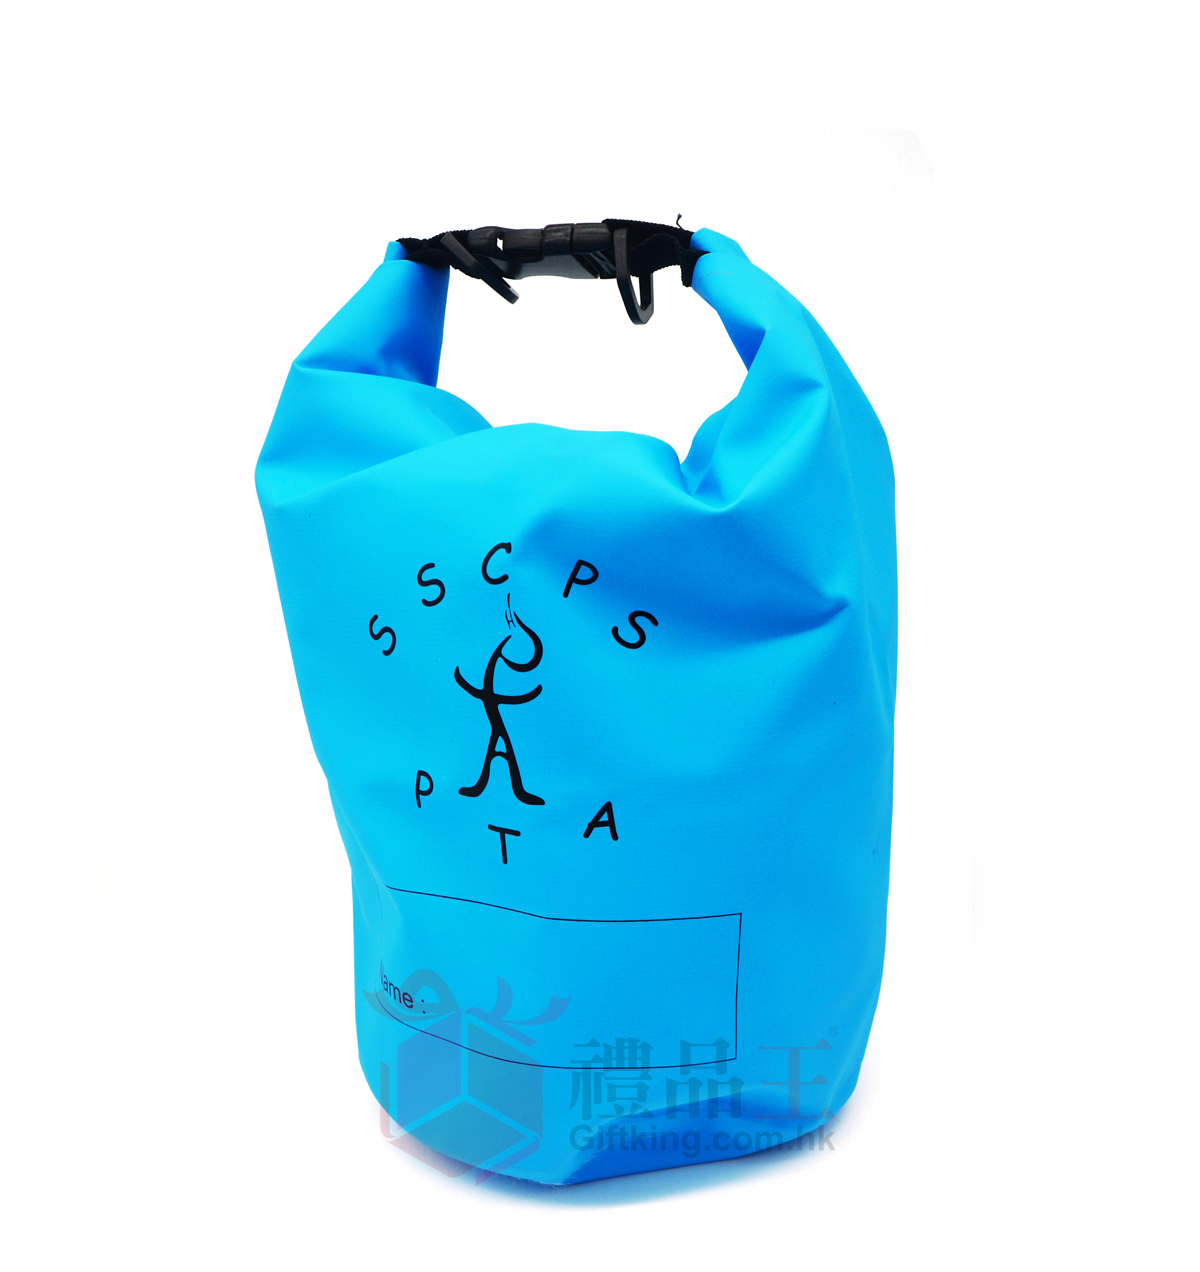 St. Stephen's College Preparatory School PTA Outdoor Waterproof Bag (Travel Gift)